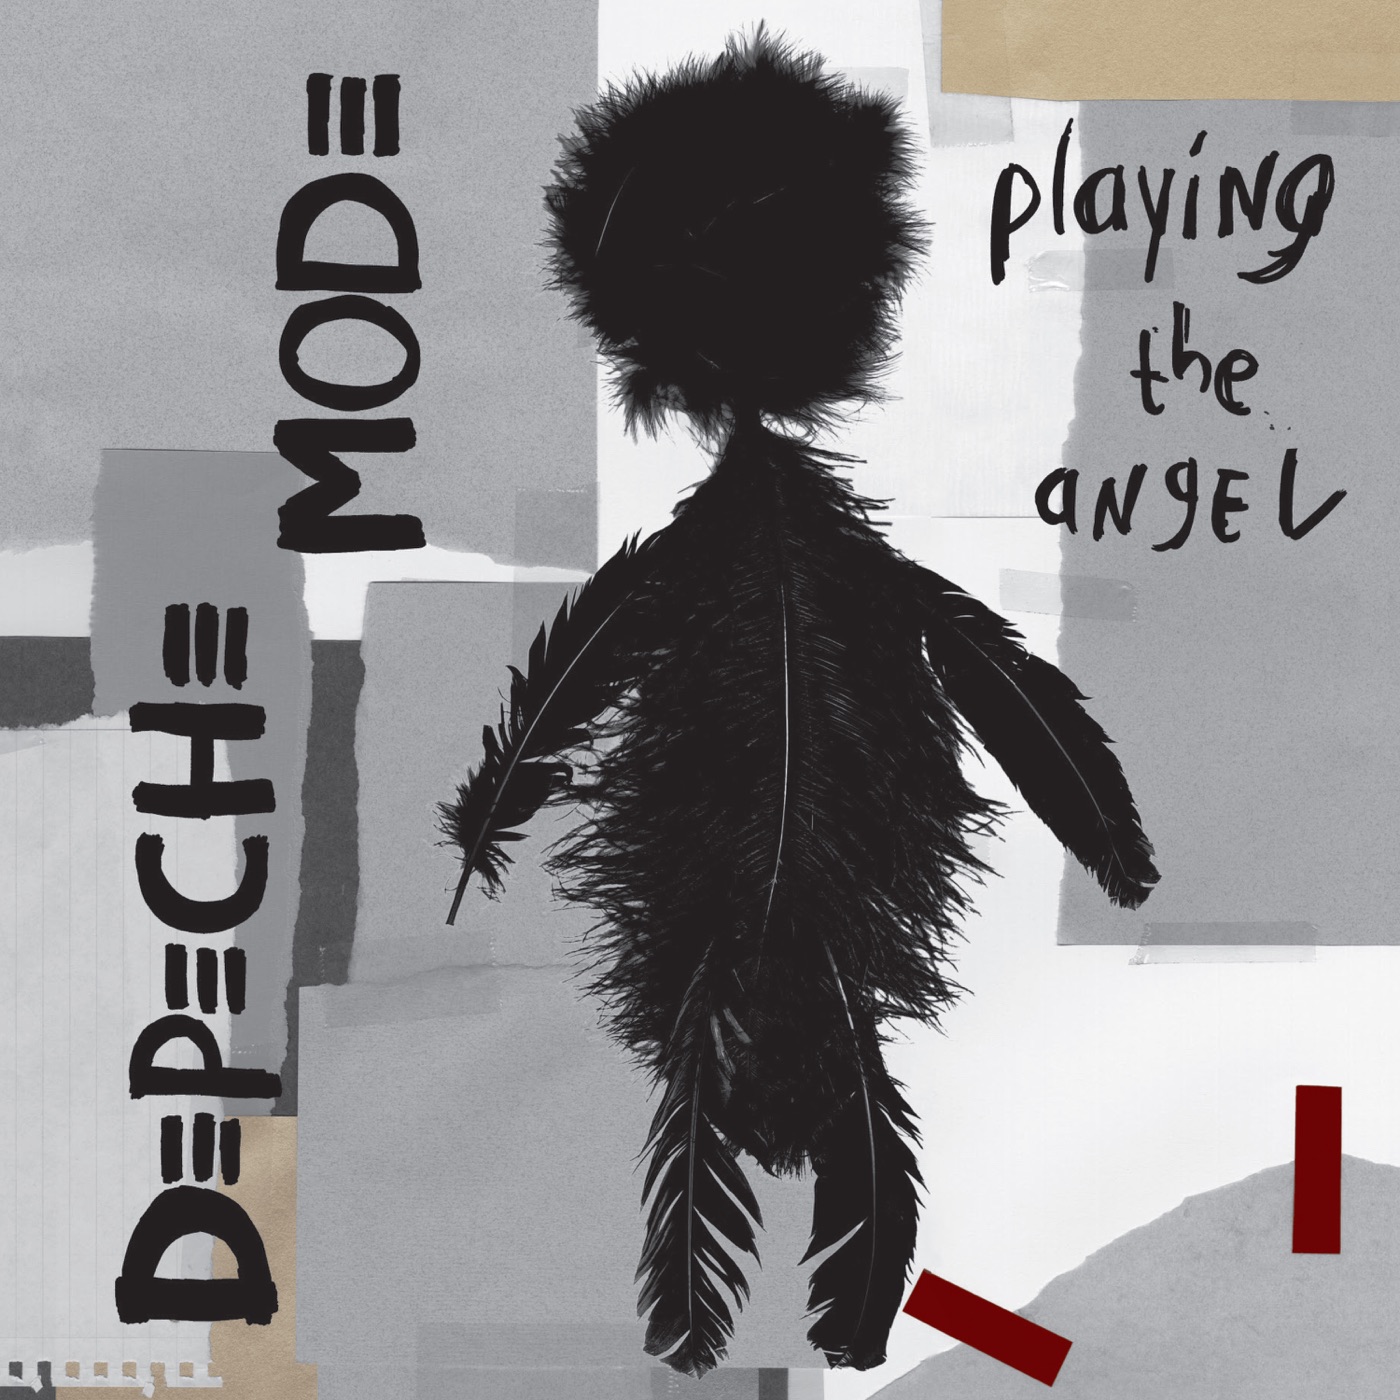 John the Revelator by Depeche Mode, Steve Fitzmaurice